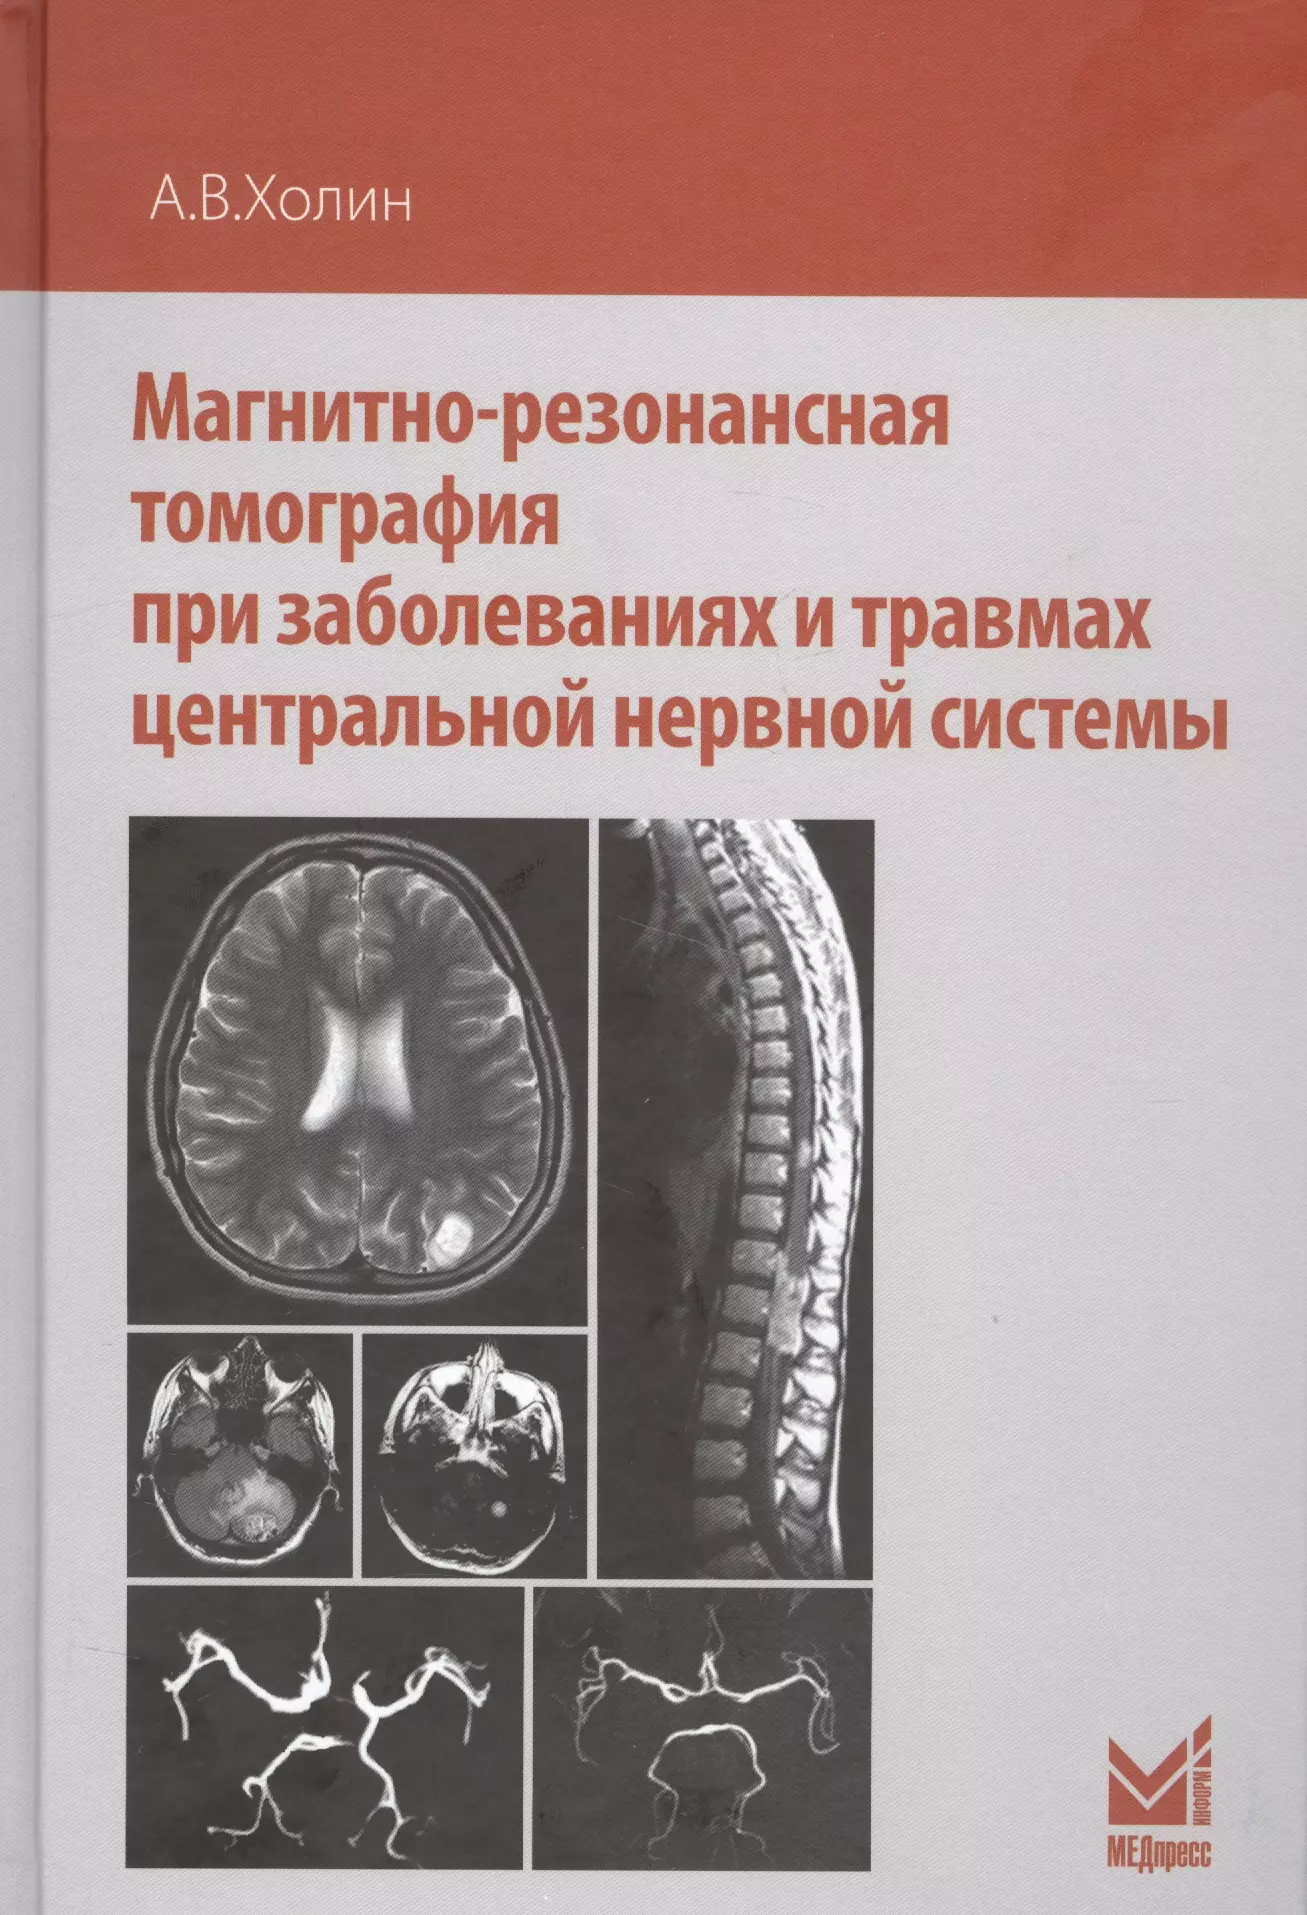 Холин Александр Васильевич - Магнитно-резонансная томография при заболеваниях и травмах центральной нервной системы